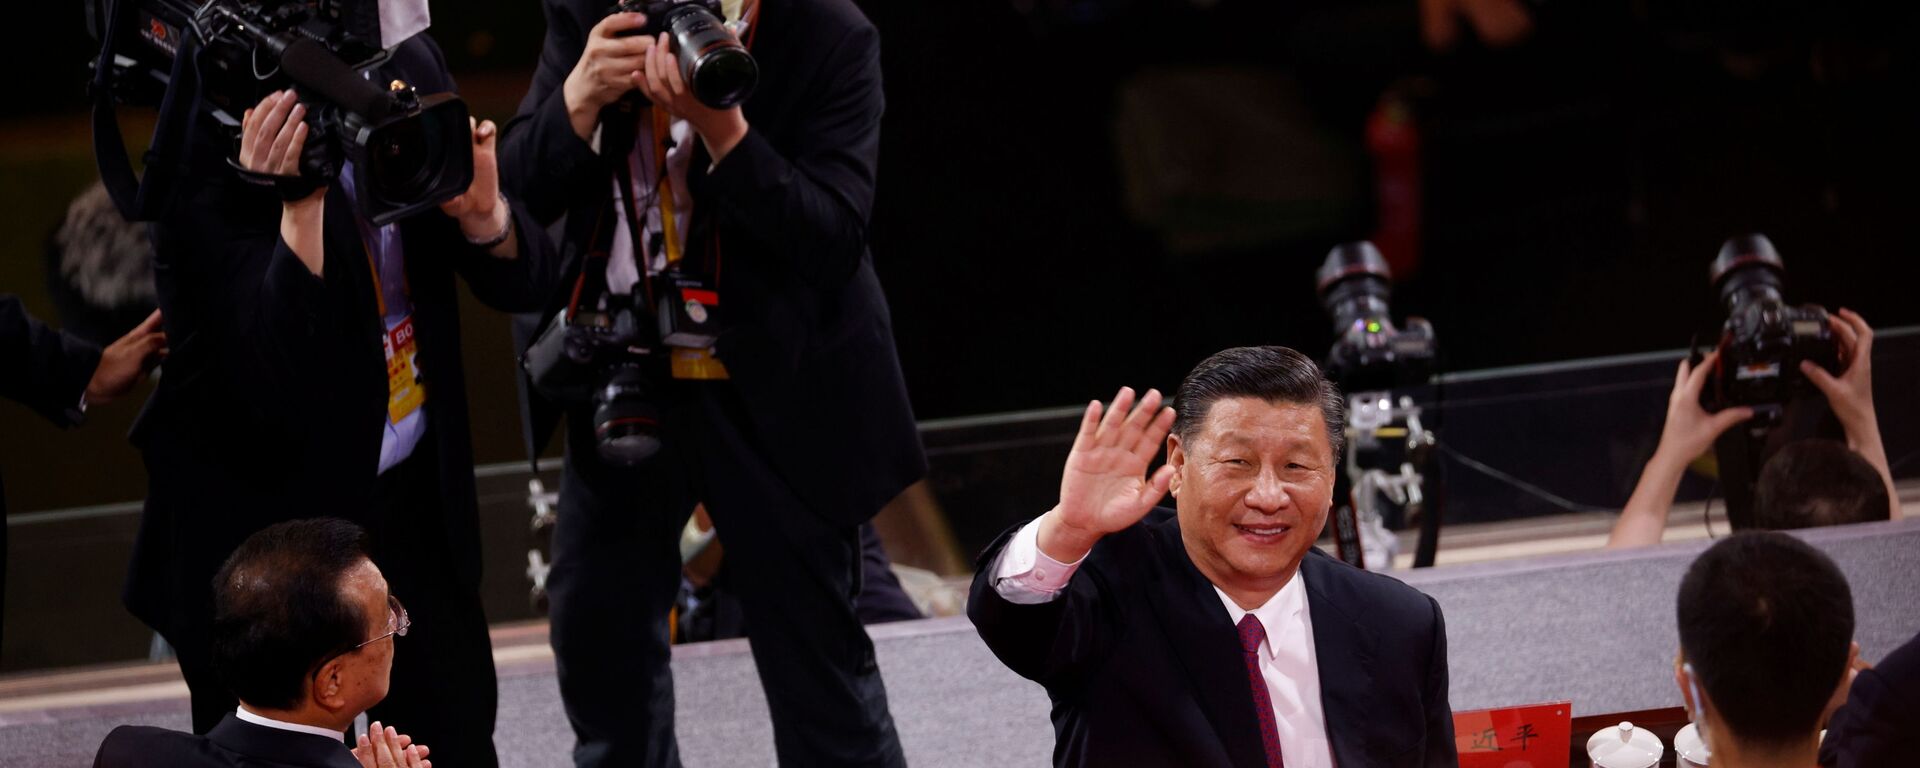 الرئيس الصيني شي جين بينغ يحي الجمهور بعد انتهاء حفل بمناسبة الذكرى المئوية لتأسيس الحزب الشيوعي الصيني في بكين، الصين 28 يونيو 2021 - سبوتنيك عربي, 1920, 21.08.2021